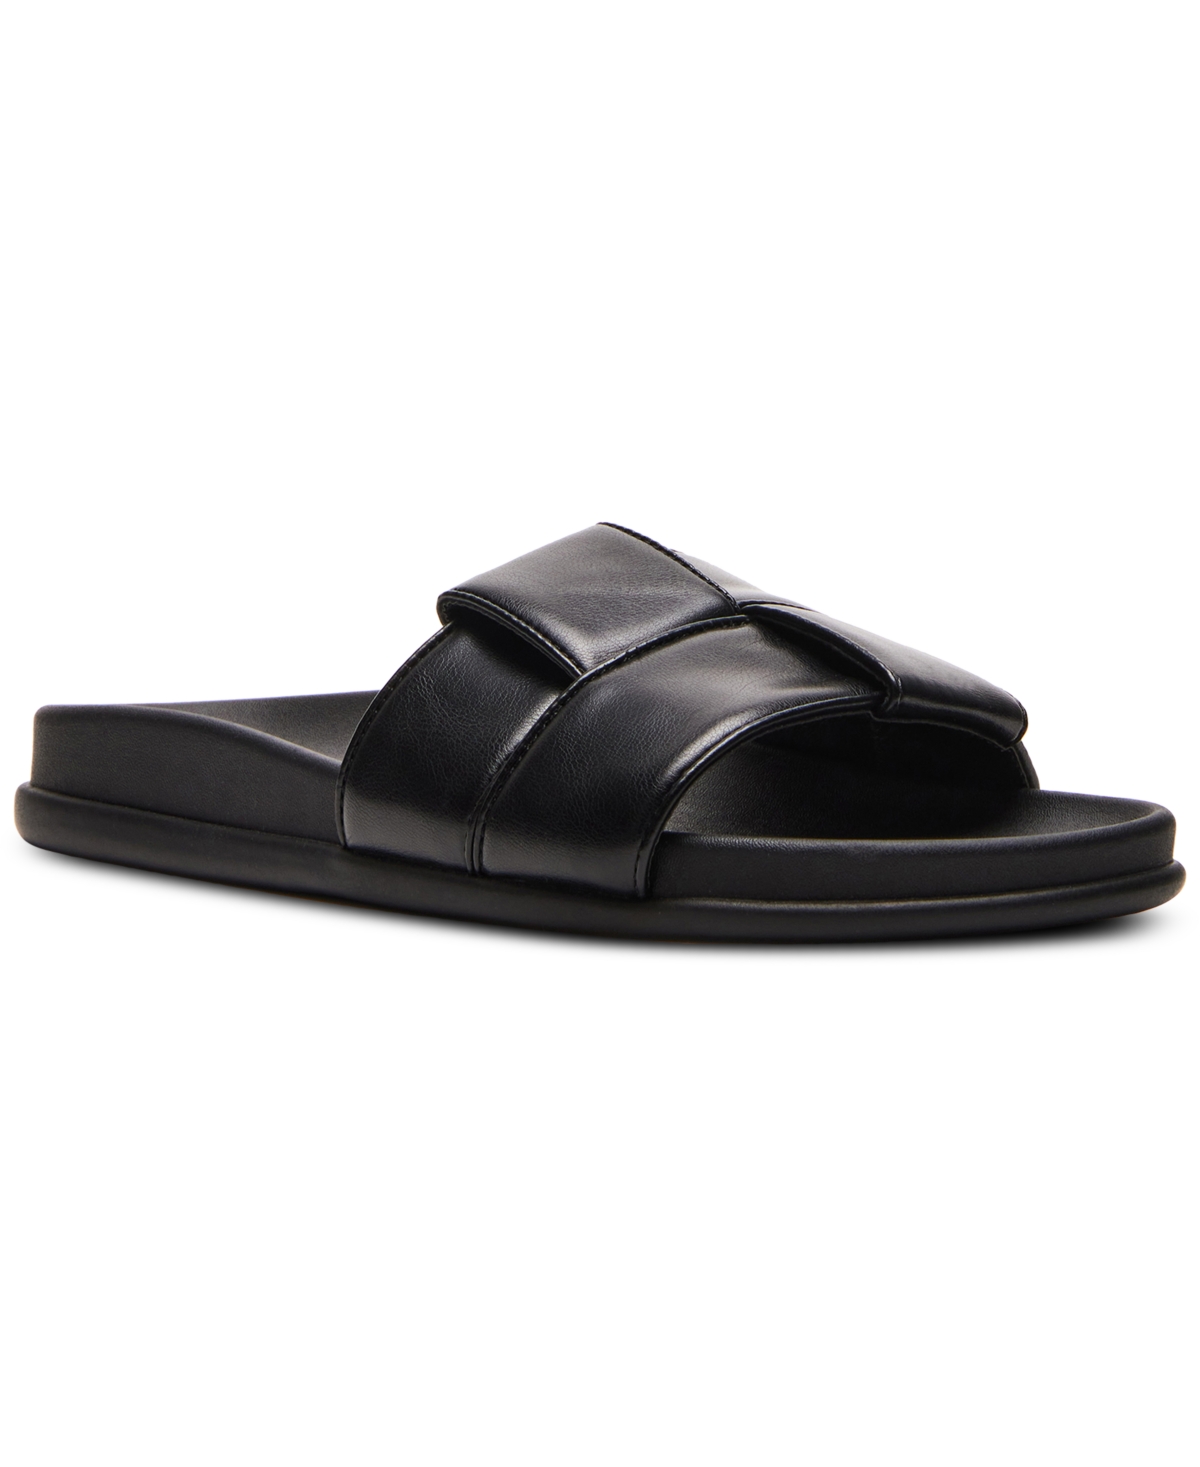 Xion Footbed Slide Sandals - Black